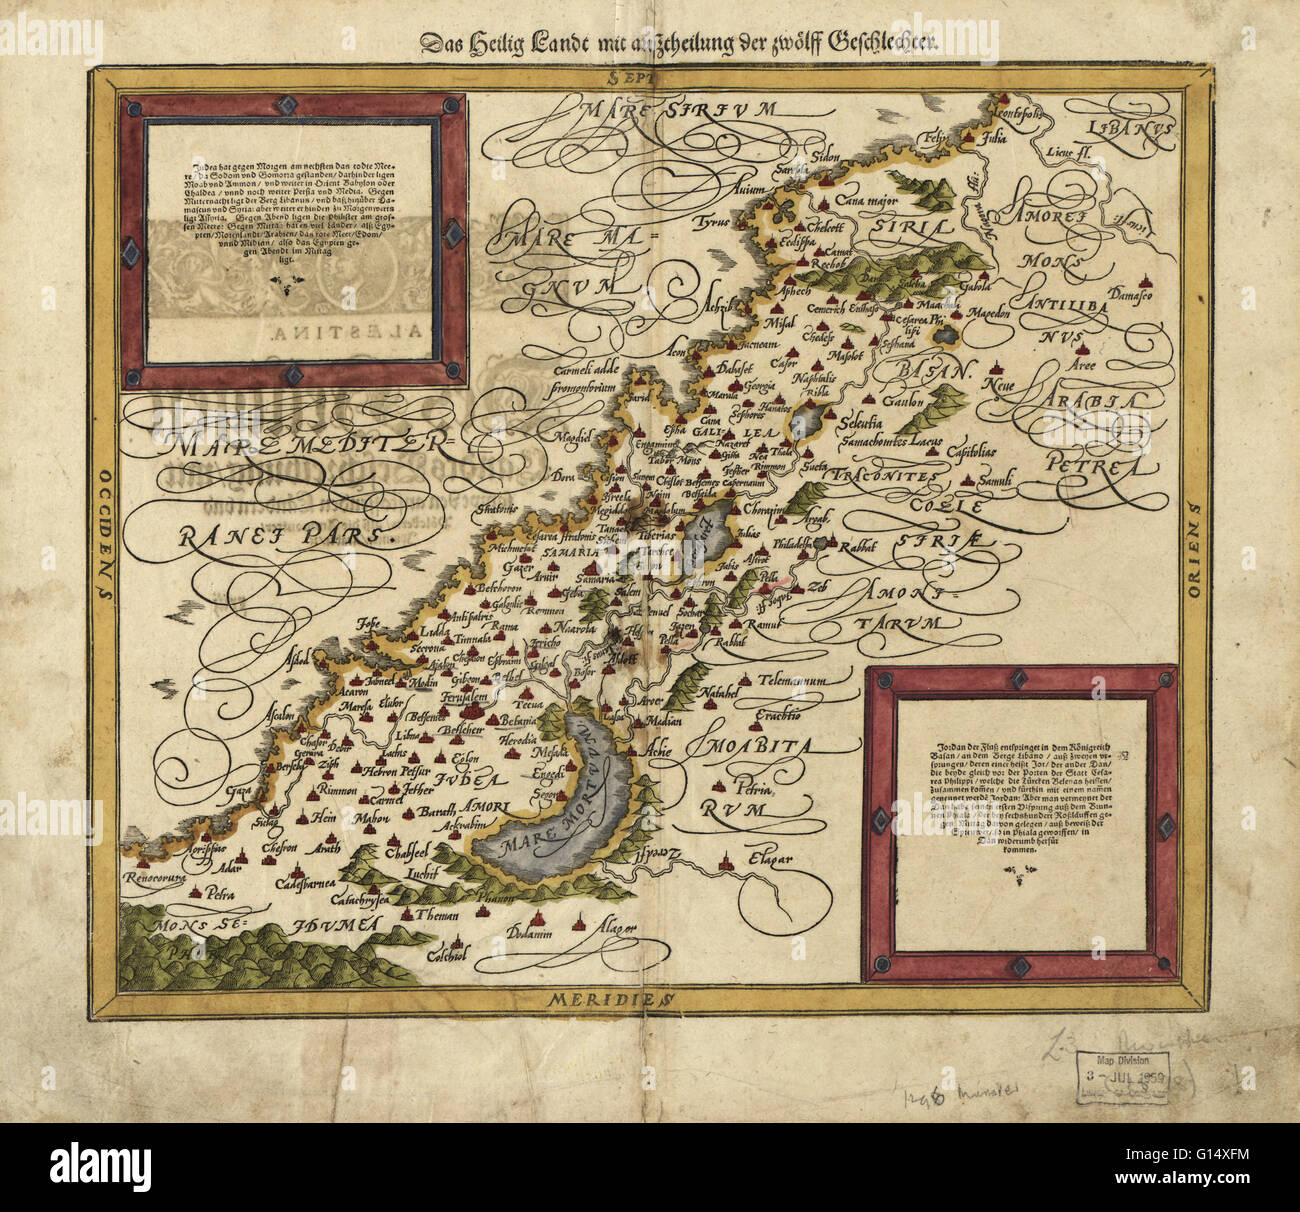 16e siècle plan de la Palestine. Nord est vers la droite. Publié en 1588, cet Allemand carte montre la géographie de la Palestine, Centerd sur la zone qui deviendra plus tard l'état d'Israël. Les inscriptions sont en allemand, et les noms de lieux sont en Latin. Banque D'Images